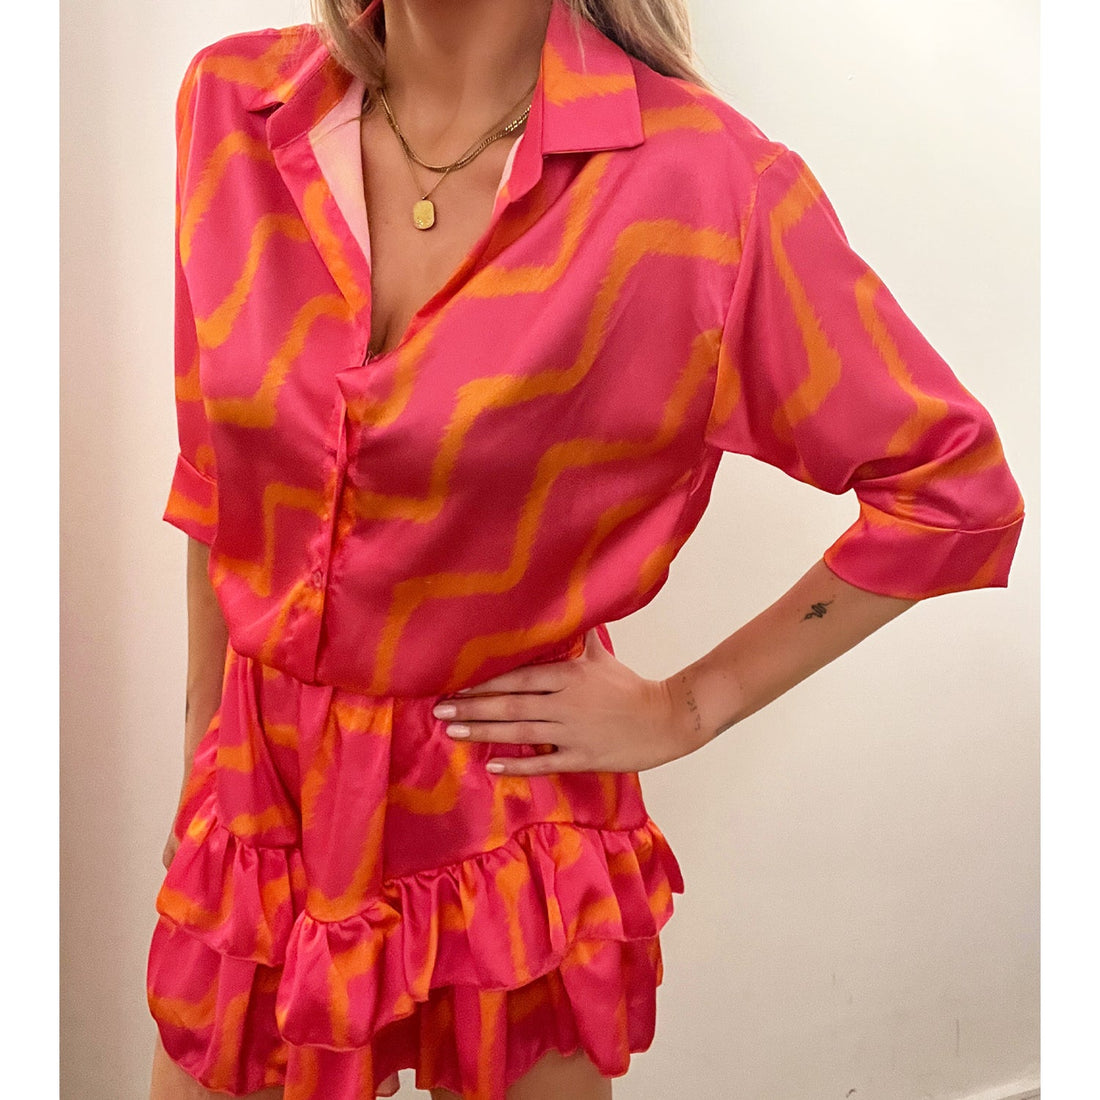 Roze met oranje zig zag print blouse satin zijde. Oversized roze blouse met oranje zig zag print en 3/4 mouwen. De blouse is one-size en geschikt voor maat S, M en L. Materiaal van de blouse is 100% rayon (kunstzijde)